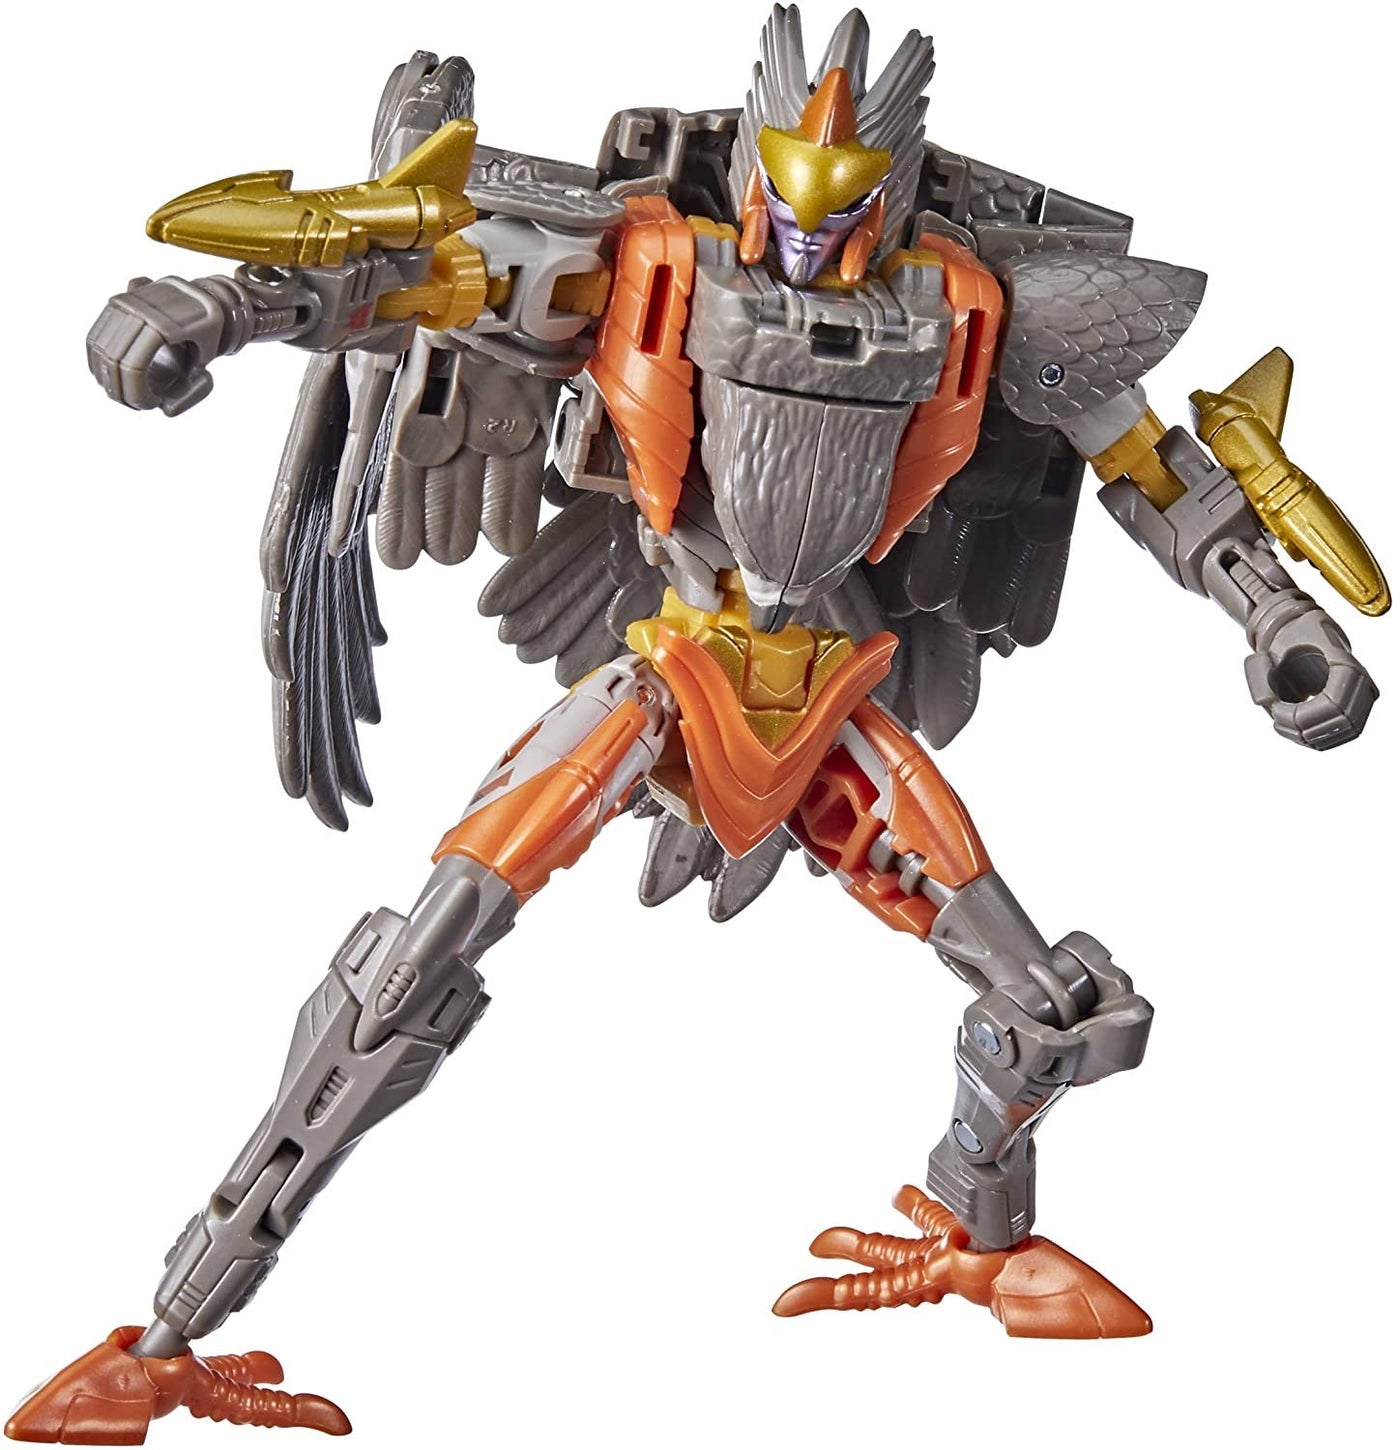 Transformers: War for Cybertron - Kingdom Deluxe Airazor